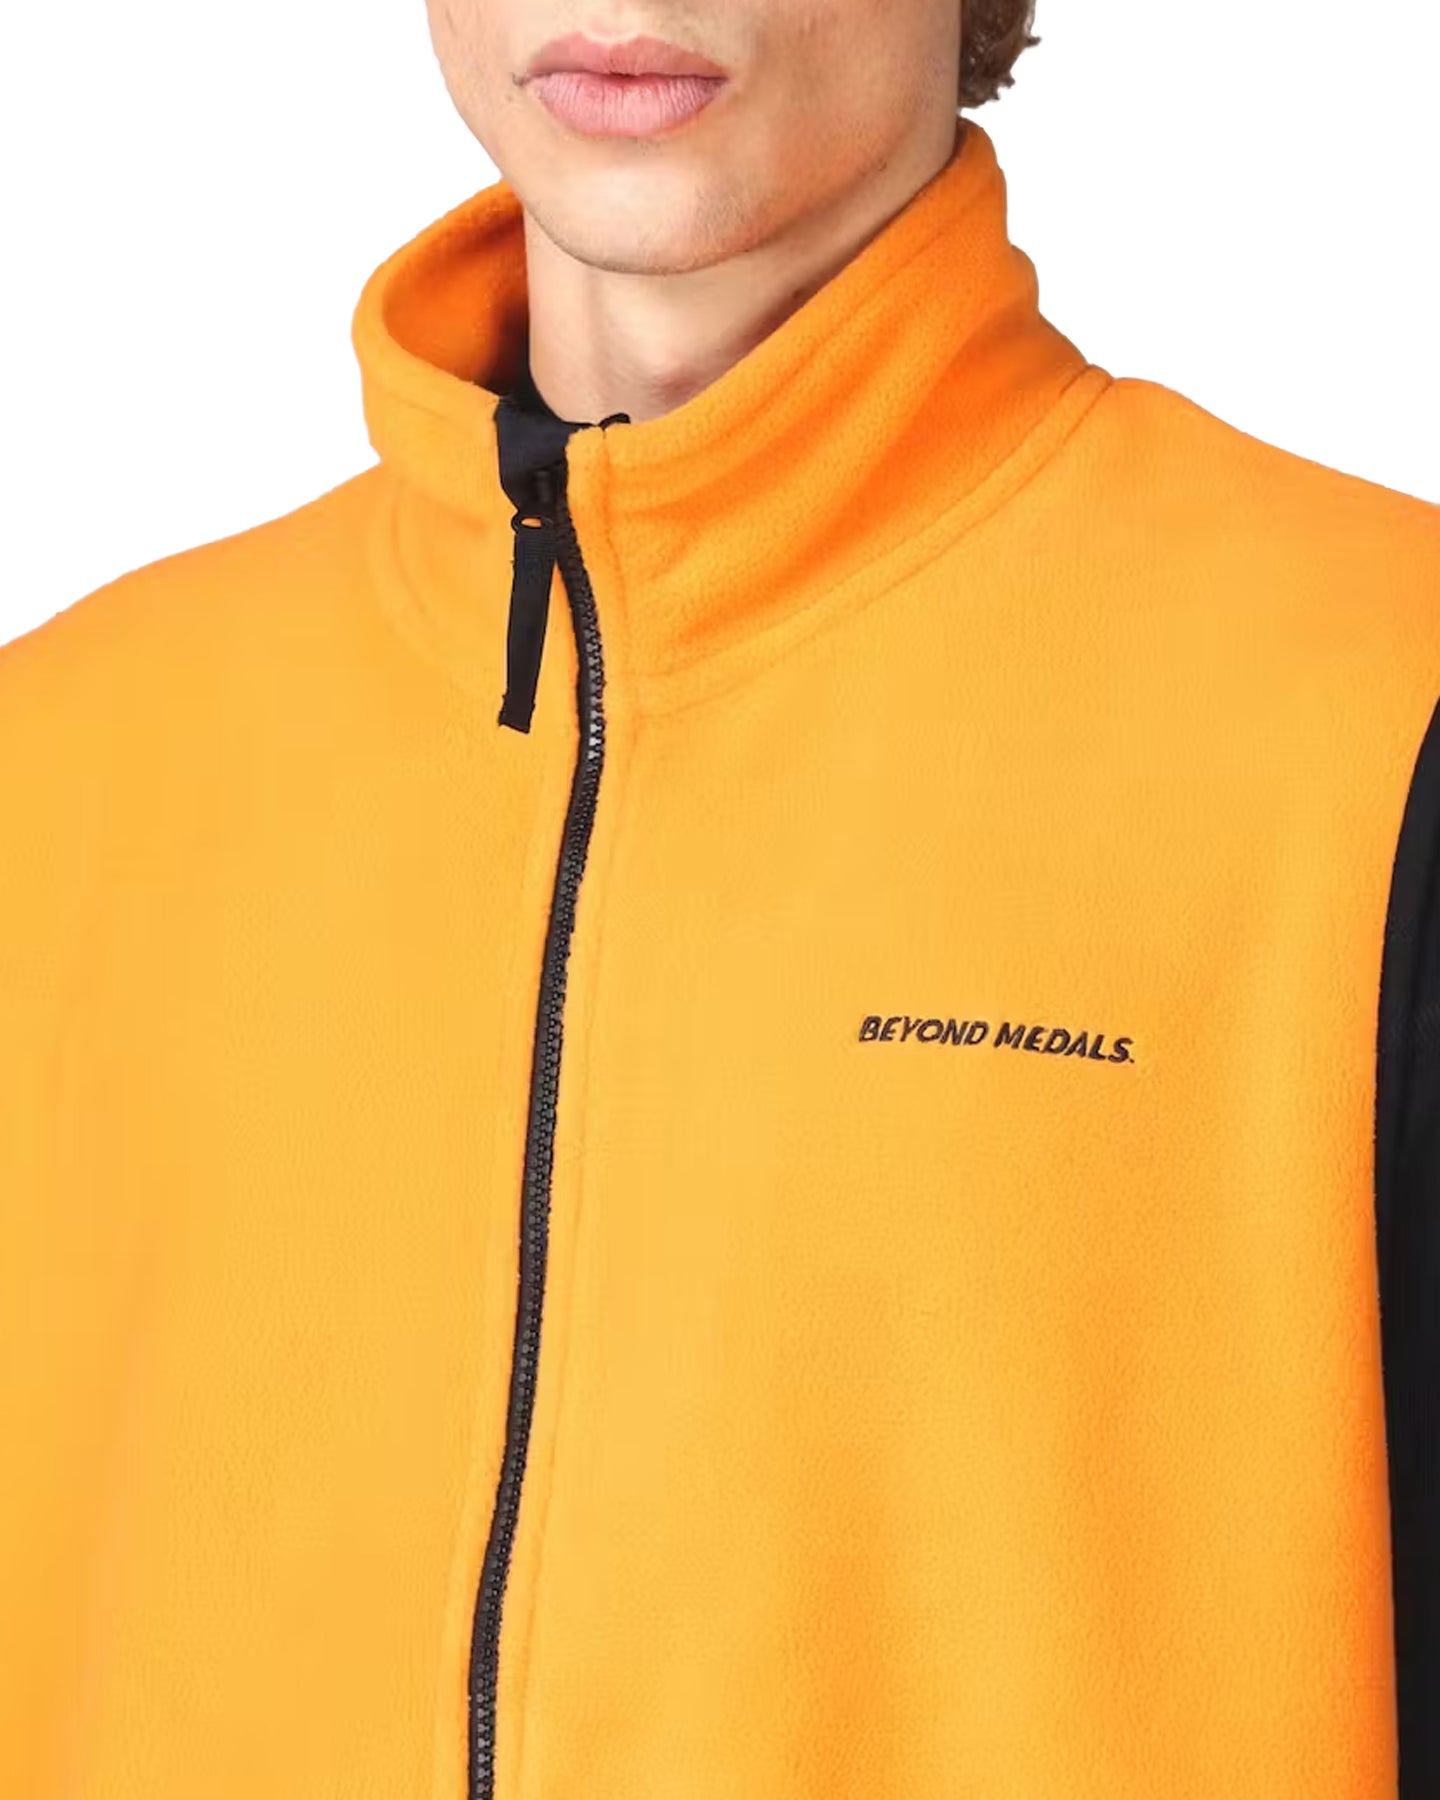 Beyond Medals Fleece Vest - Orange Jackets - SnowSkiersWarehouse